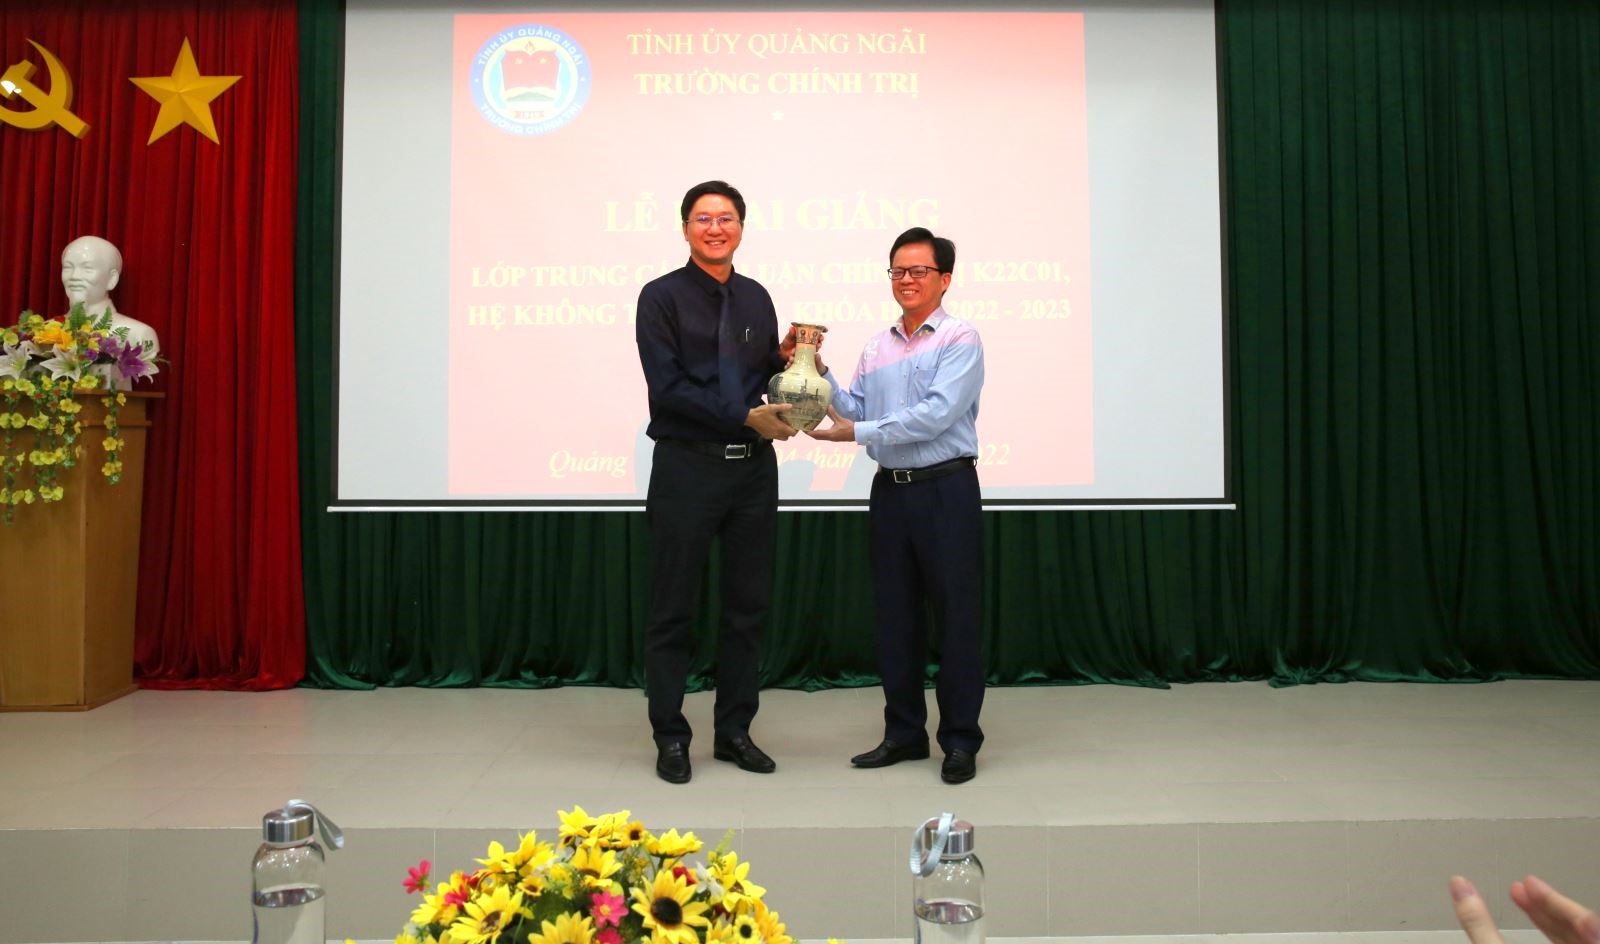 Đồng chí Nguyễn Văn Hội – Bí thư Đảng ủy, Chủ tịch Hội đồng Quản trị BSR tặng quà tri ân Ban giám hiệu Nhà trường